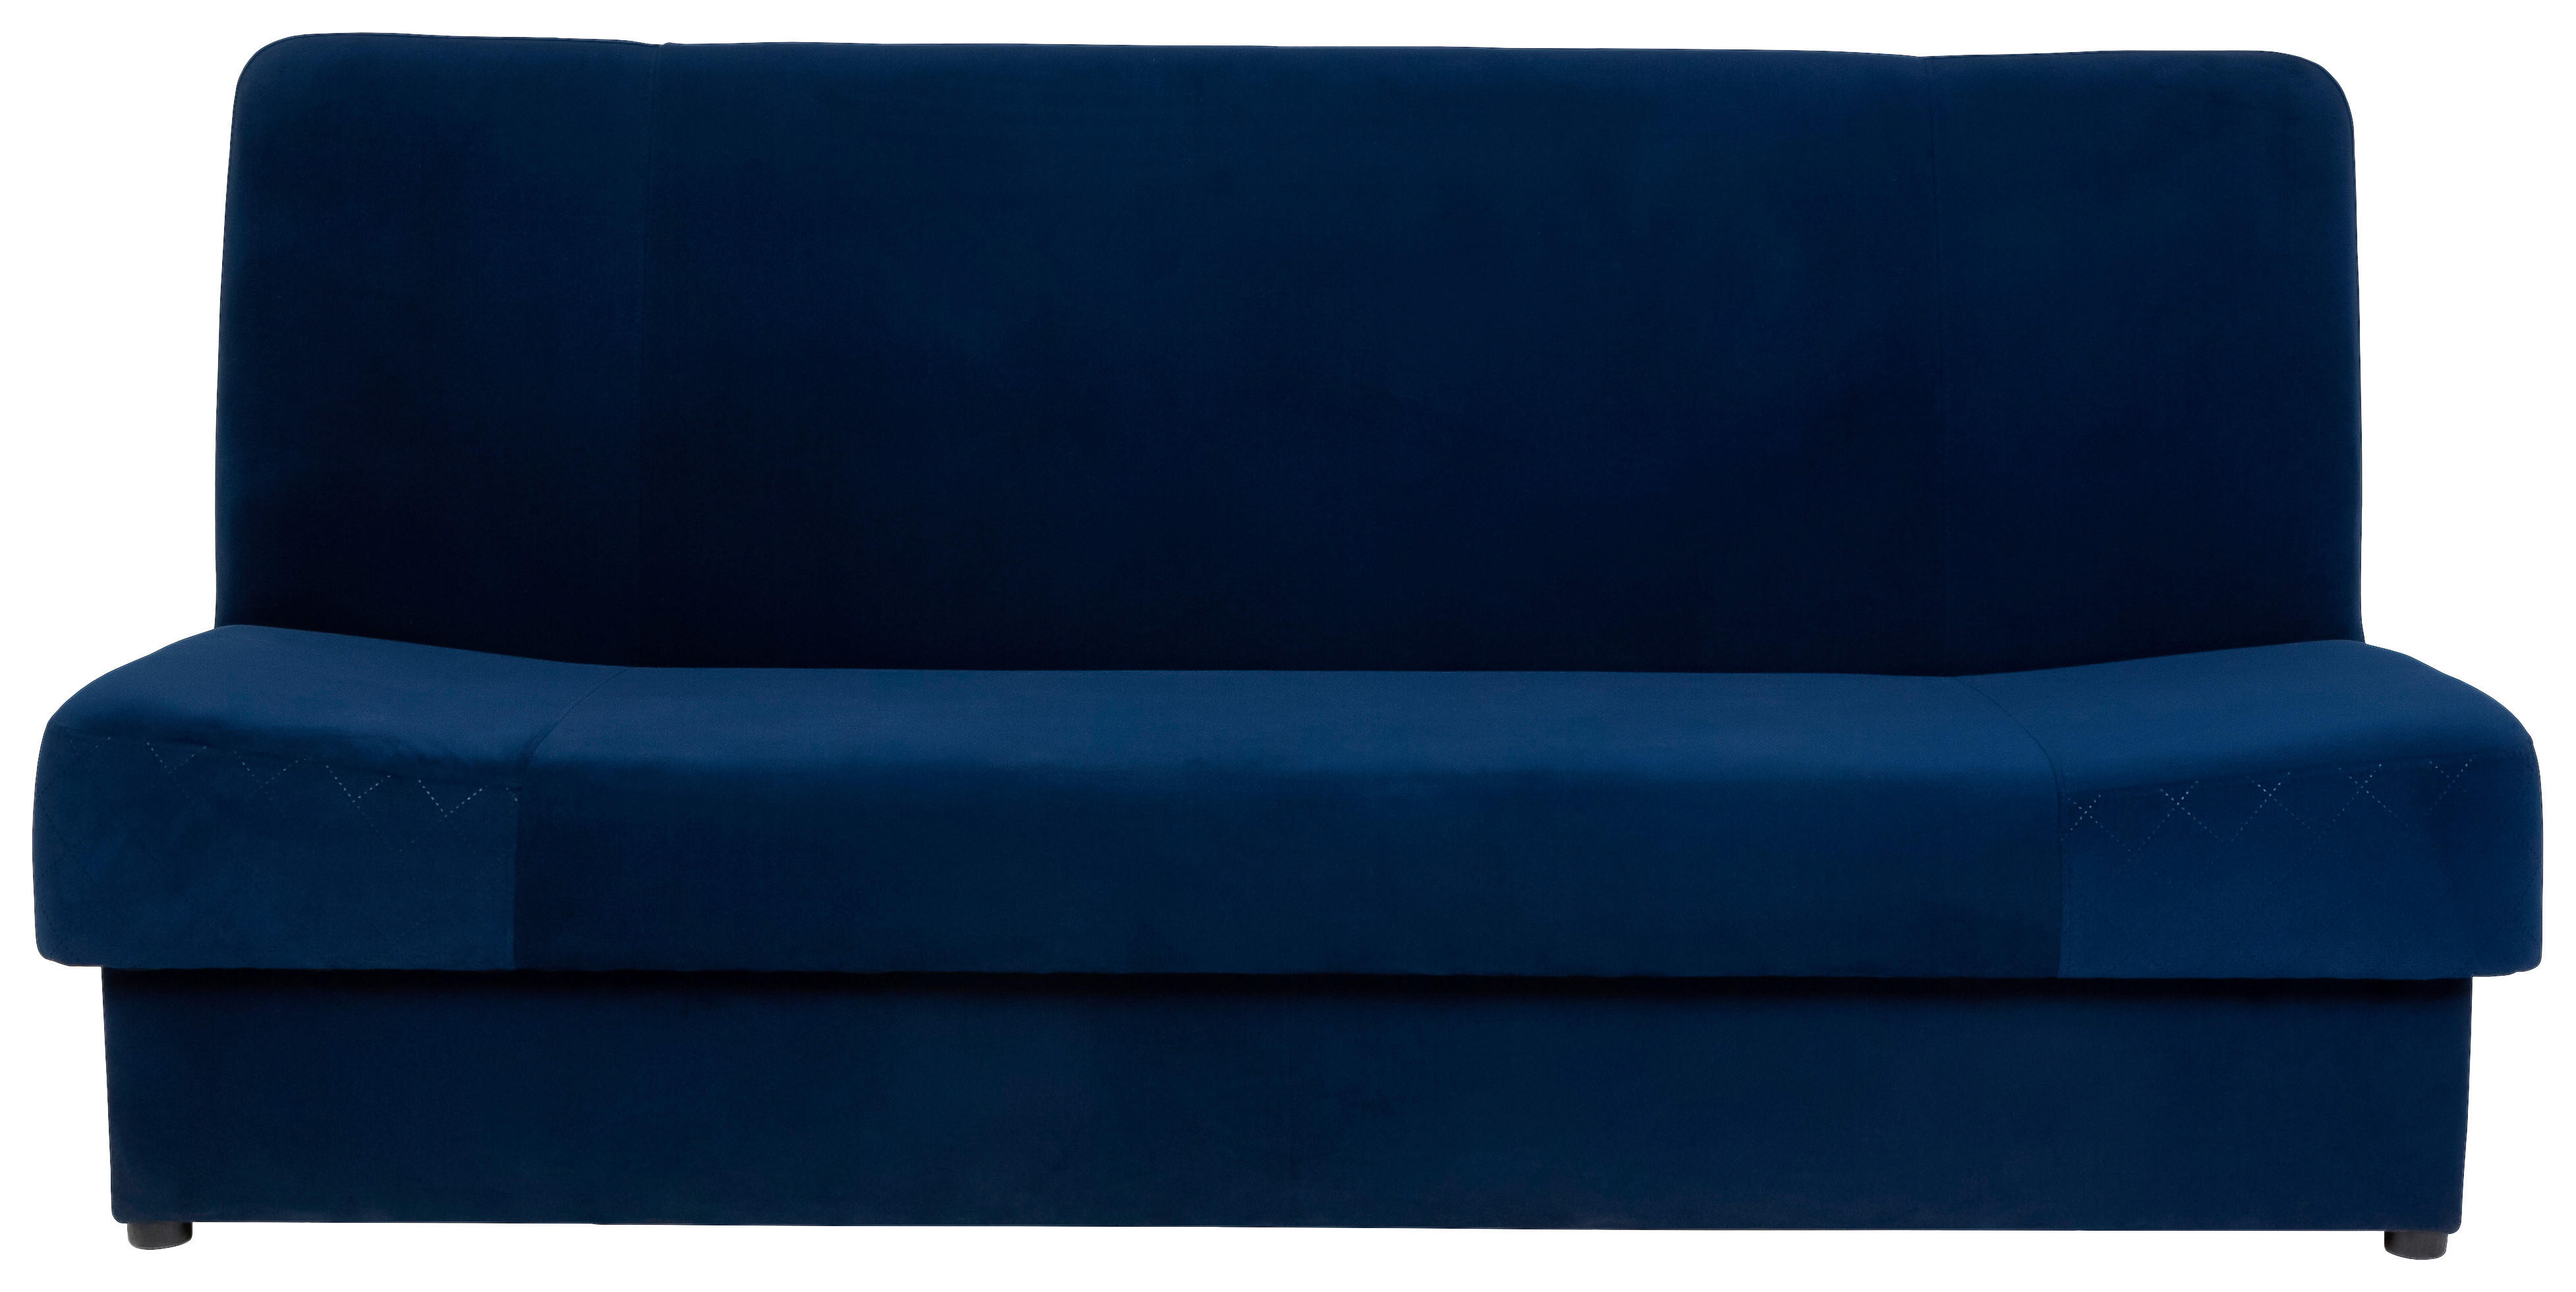 KANAPÉÁGY [ ]}kék  - fekete/kék, Design, textil (192/93/89cm) - MID.YOU